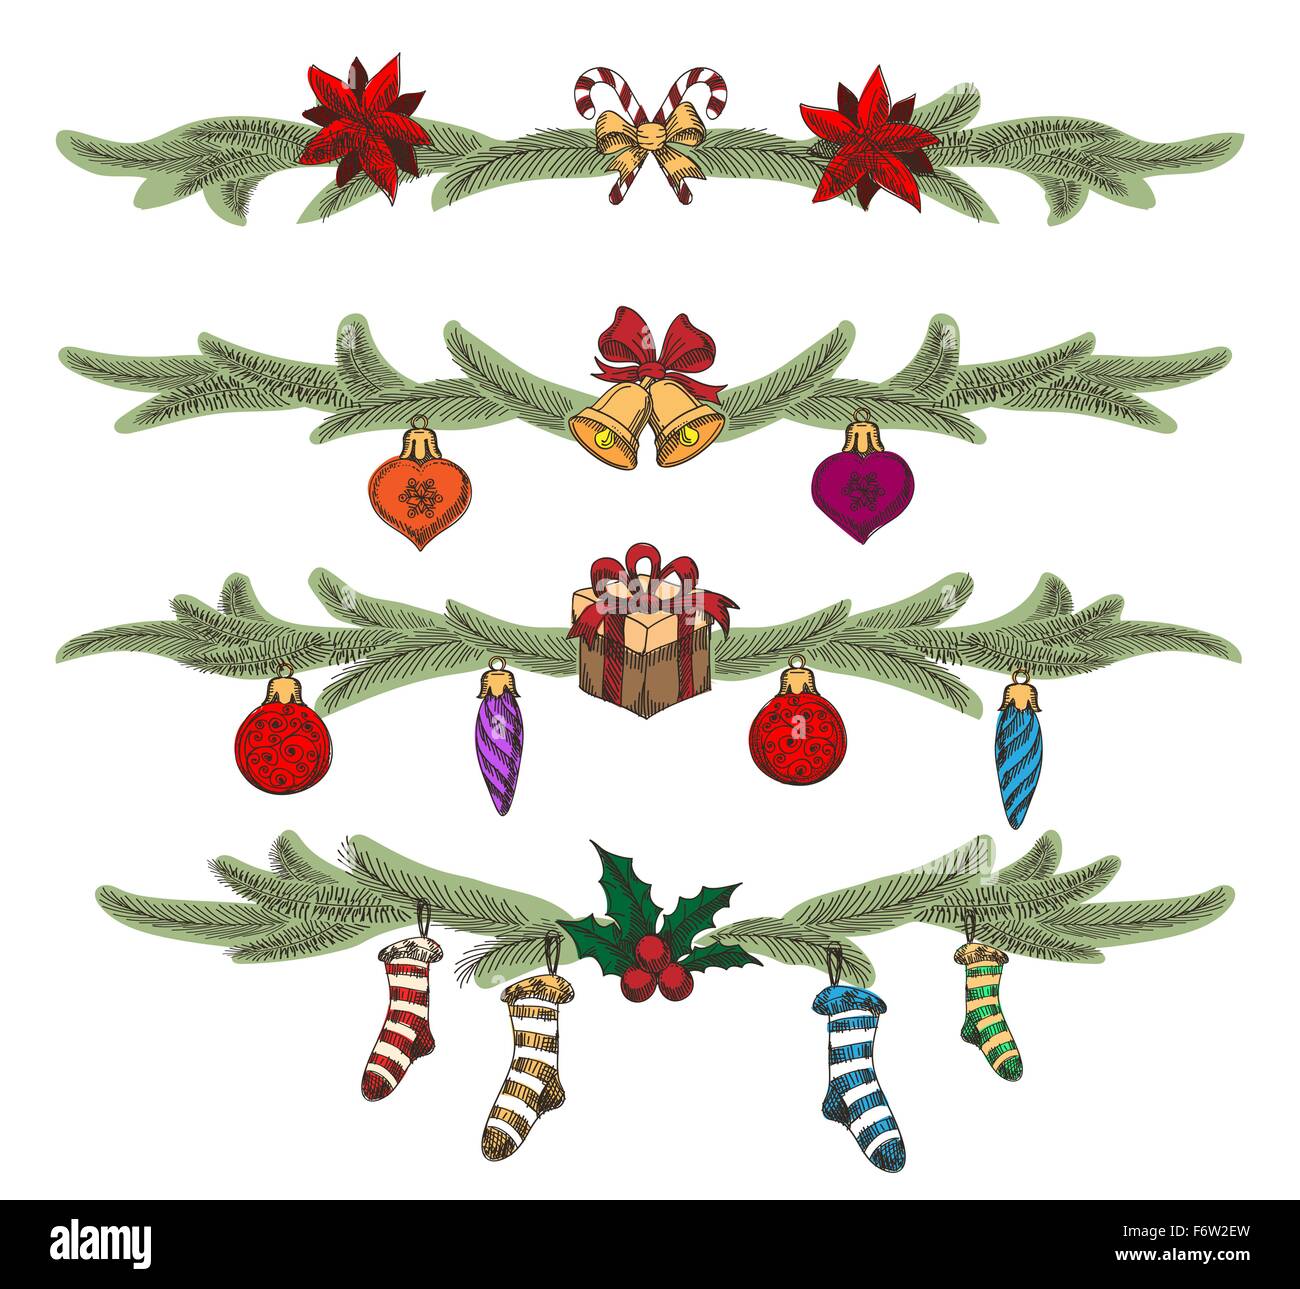 Bunte handgezeichnete Weihnachten Grenzen oder Teiler festgelegt. Weihnachten-Symbole und Kiefer Baum Zweige. Stock Vektor